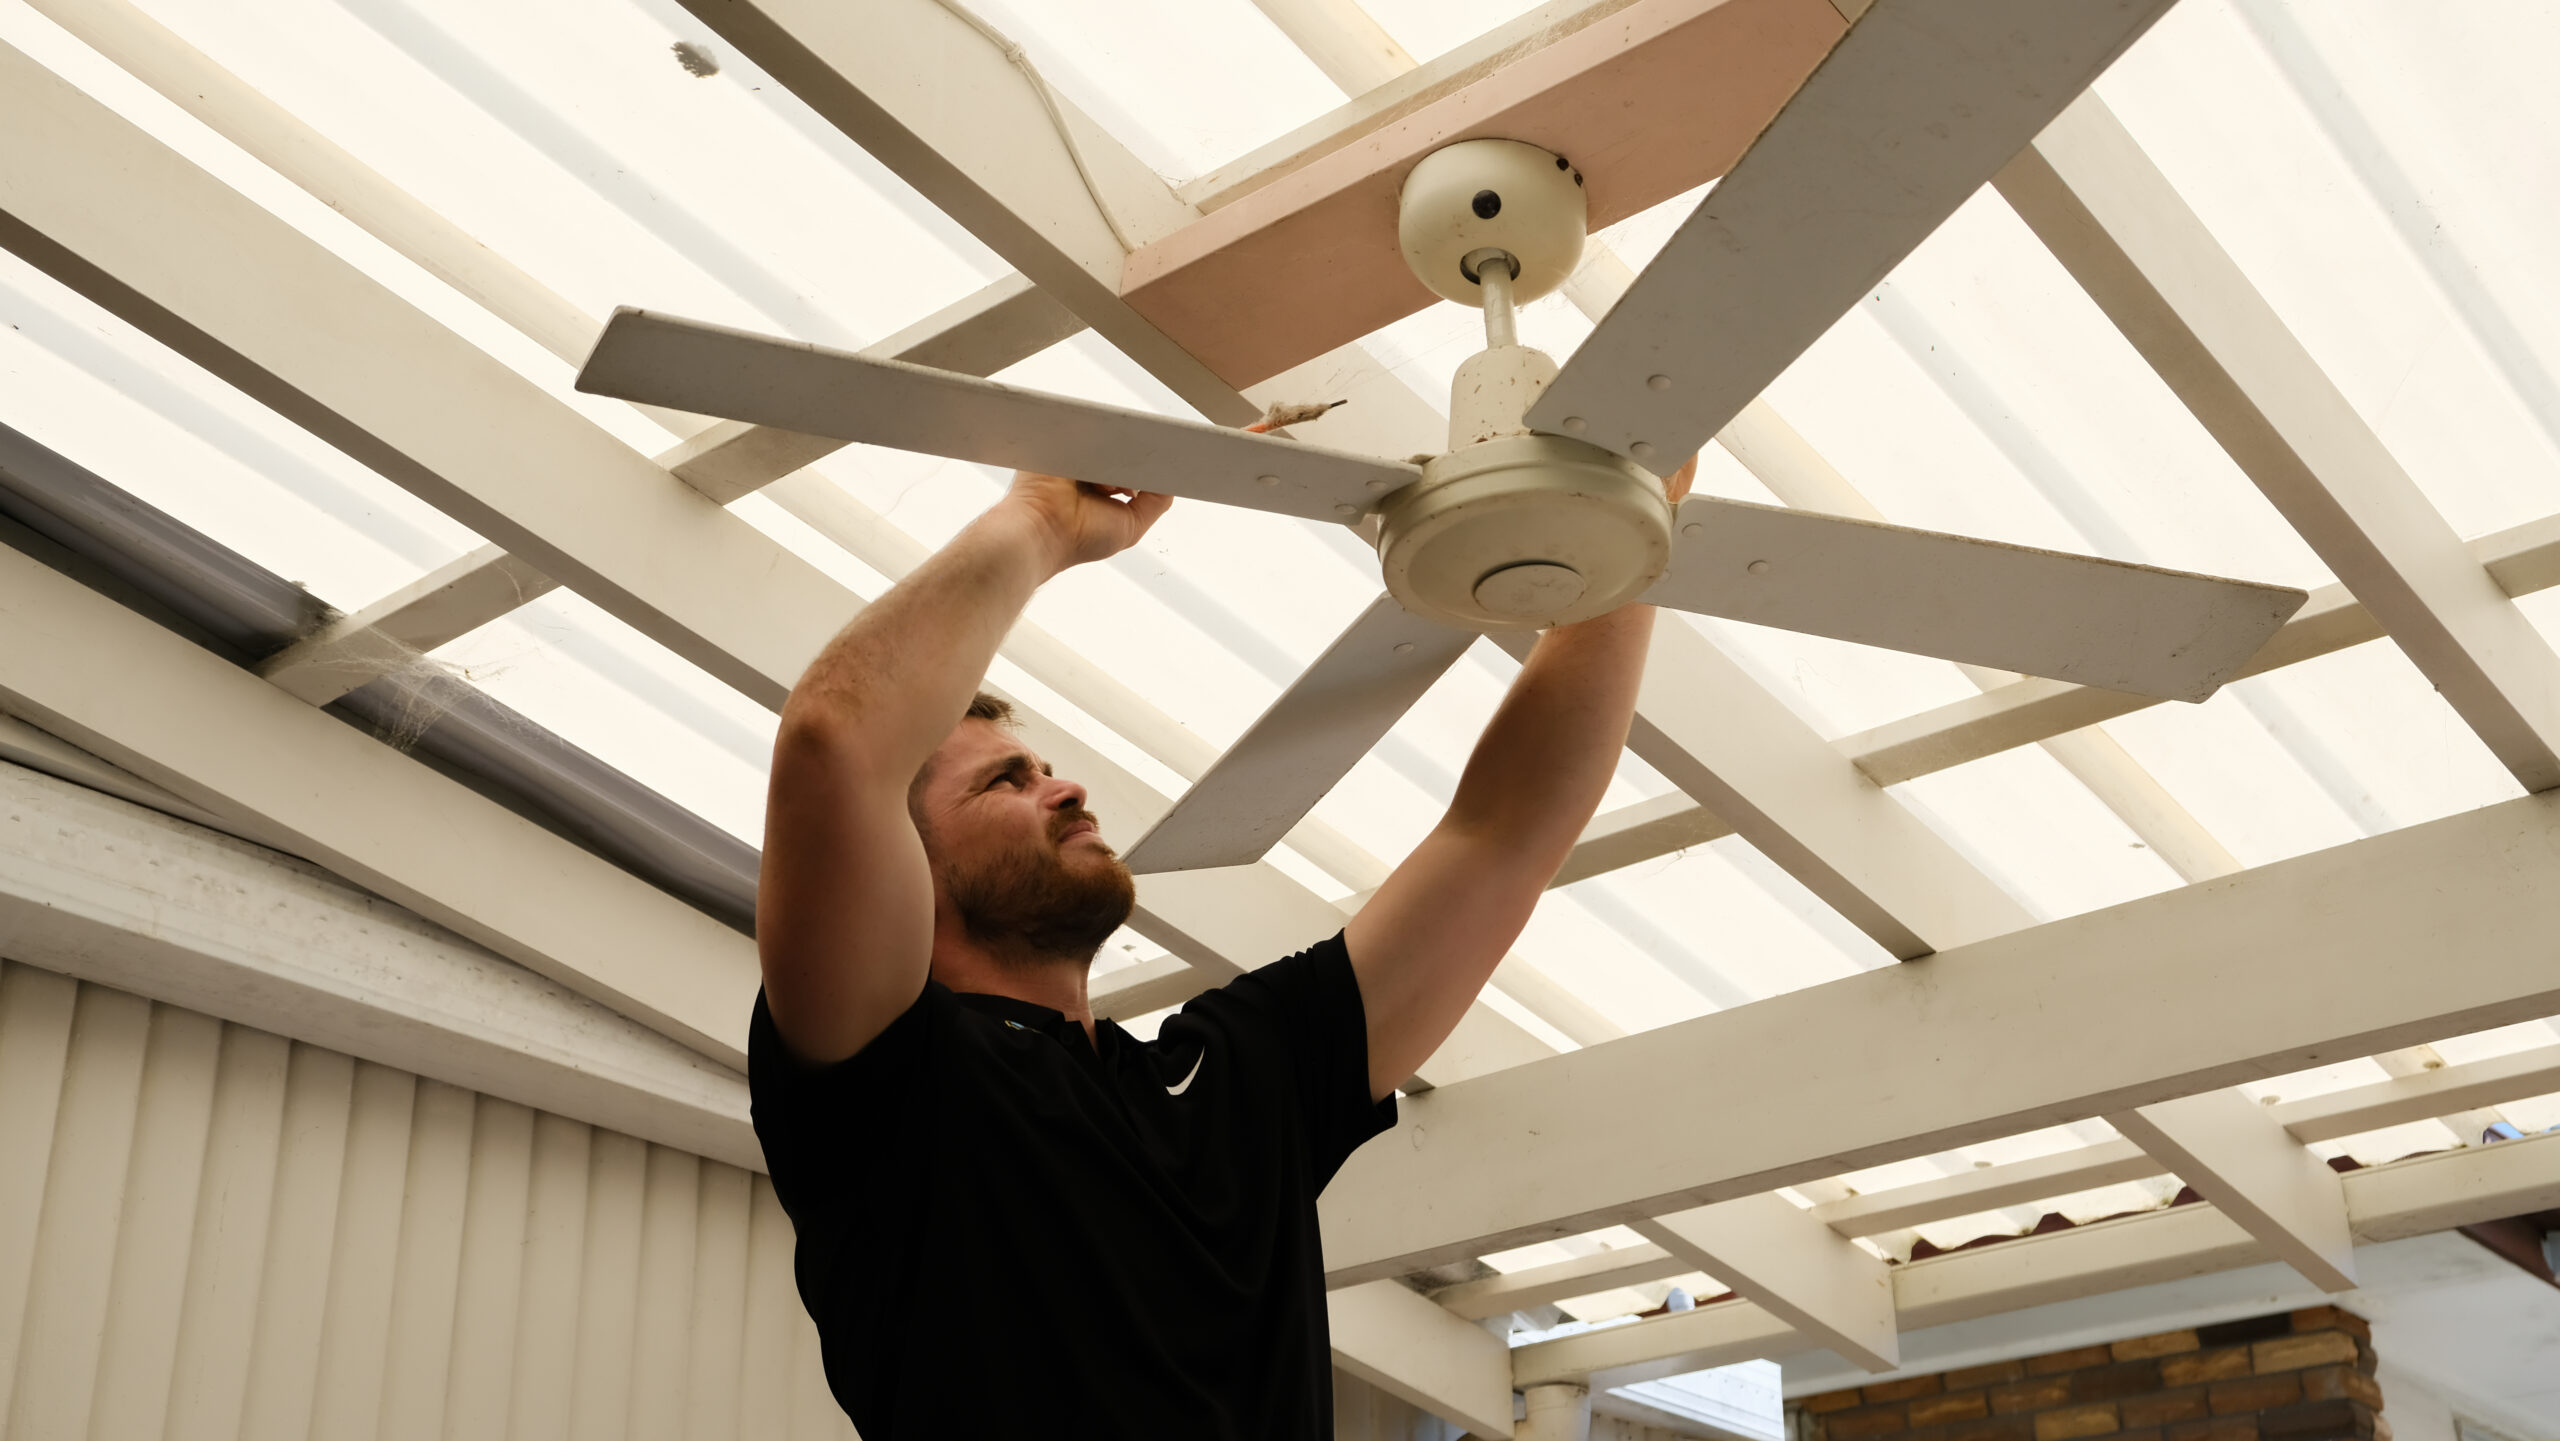 Mr Glow Electrical installing ceiling fan.